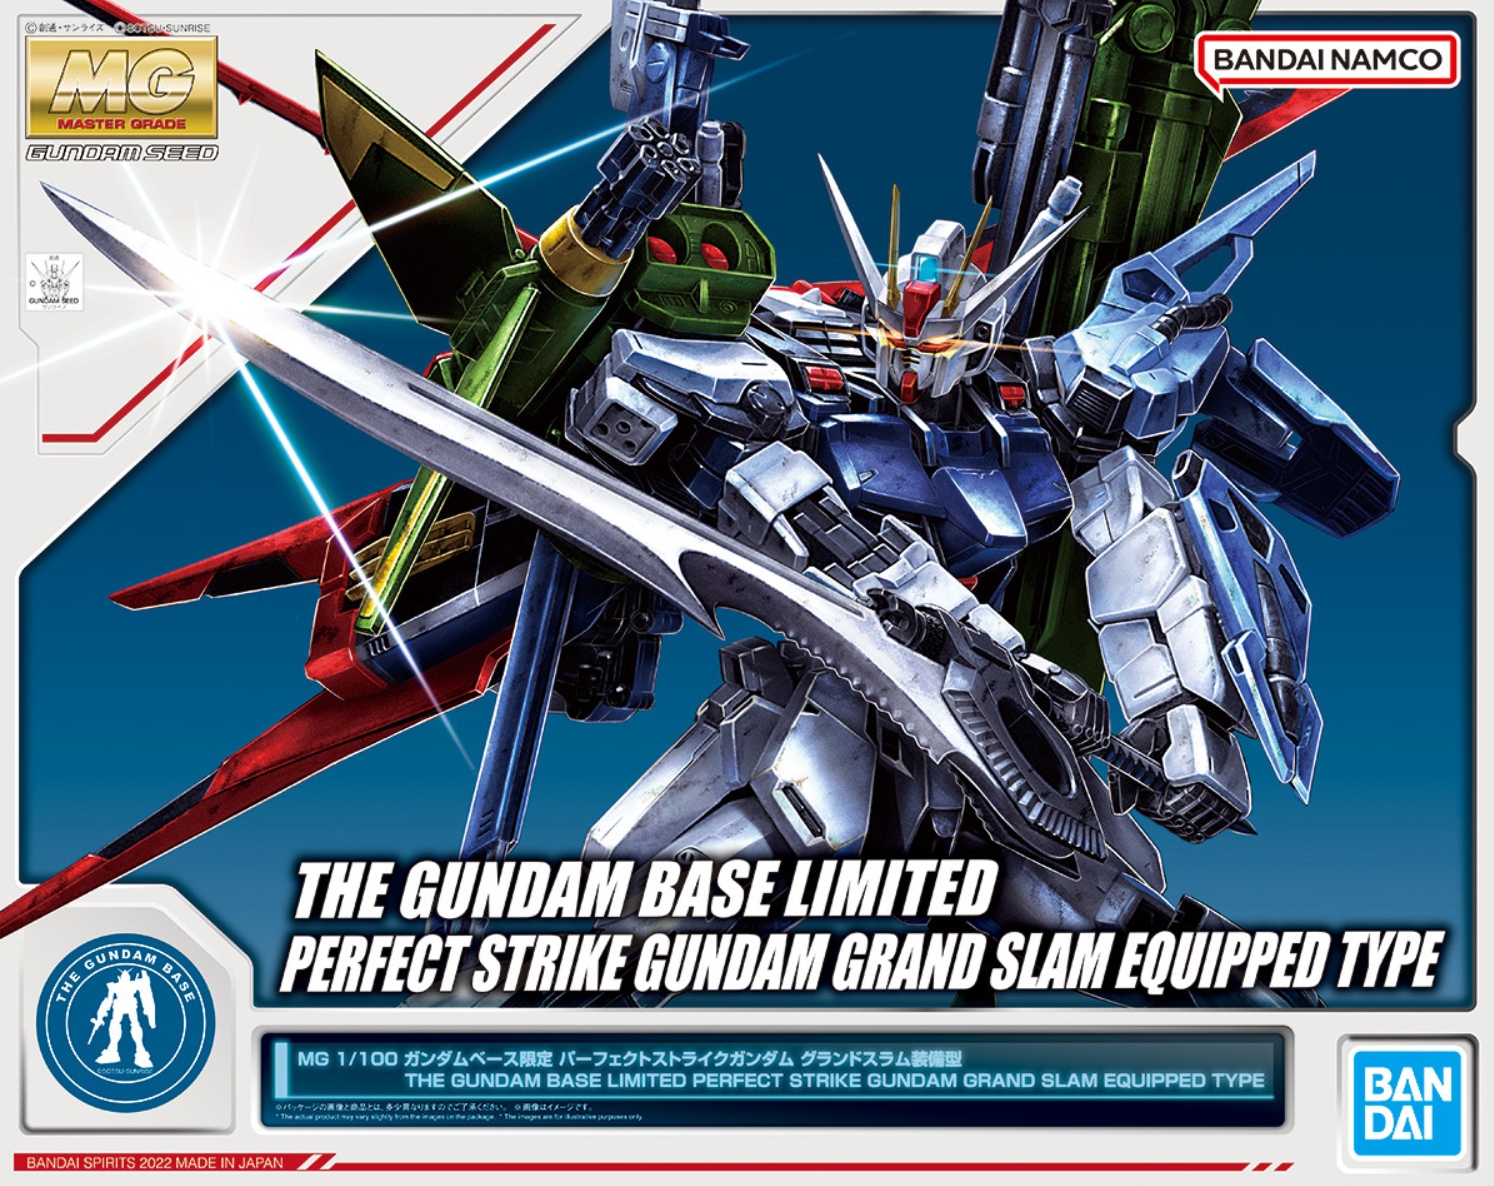 MG 1/100 Perfect Strike Gundam (Grand Slam Sword Equipment Type) box art